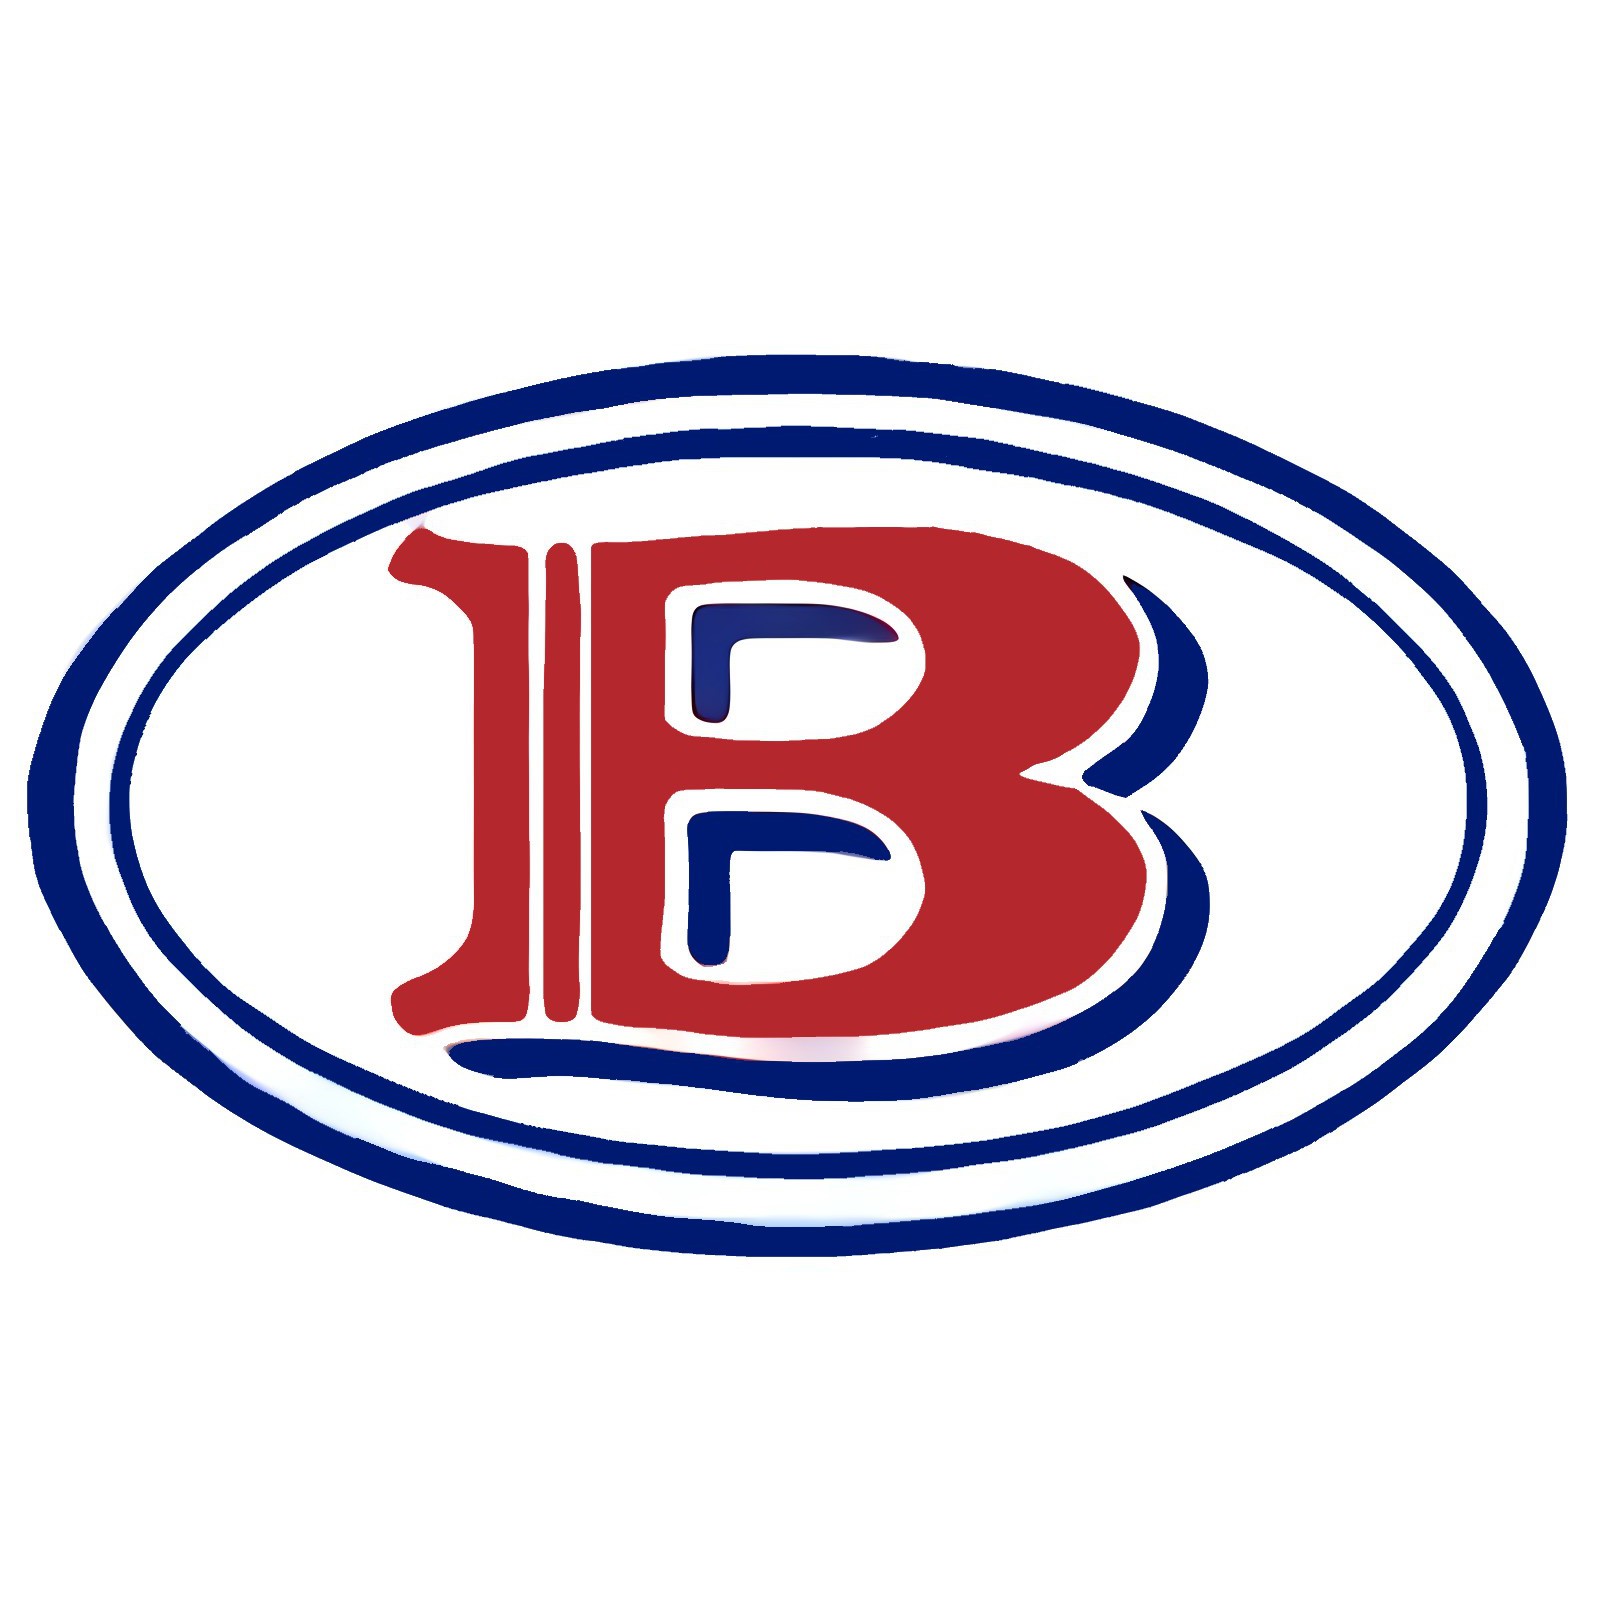 Bush's Proteins QLD (A J Bush & Sons (Manufactures) Pty Ltd) Logo